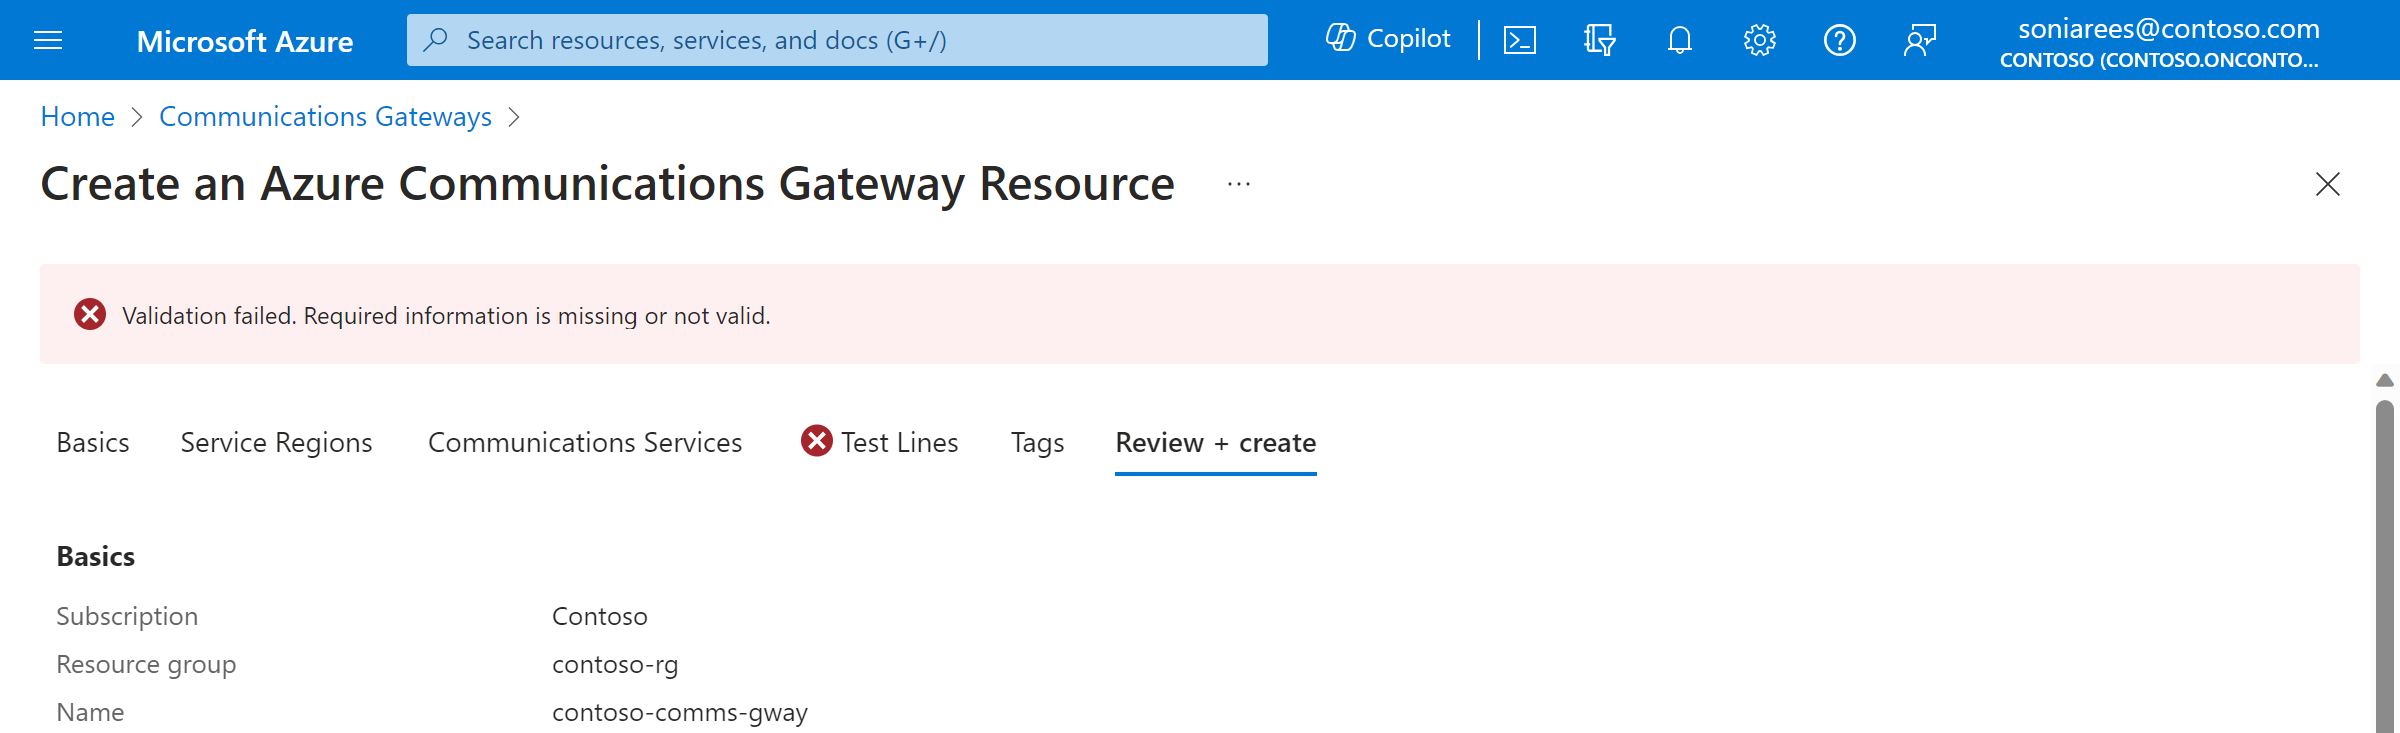 Captura de ecrã do portal Criar um Gateway de Comunicações do Azure, mostrando uma validação que falhou devido a informações em falta na secção Contactos.